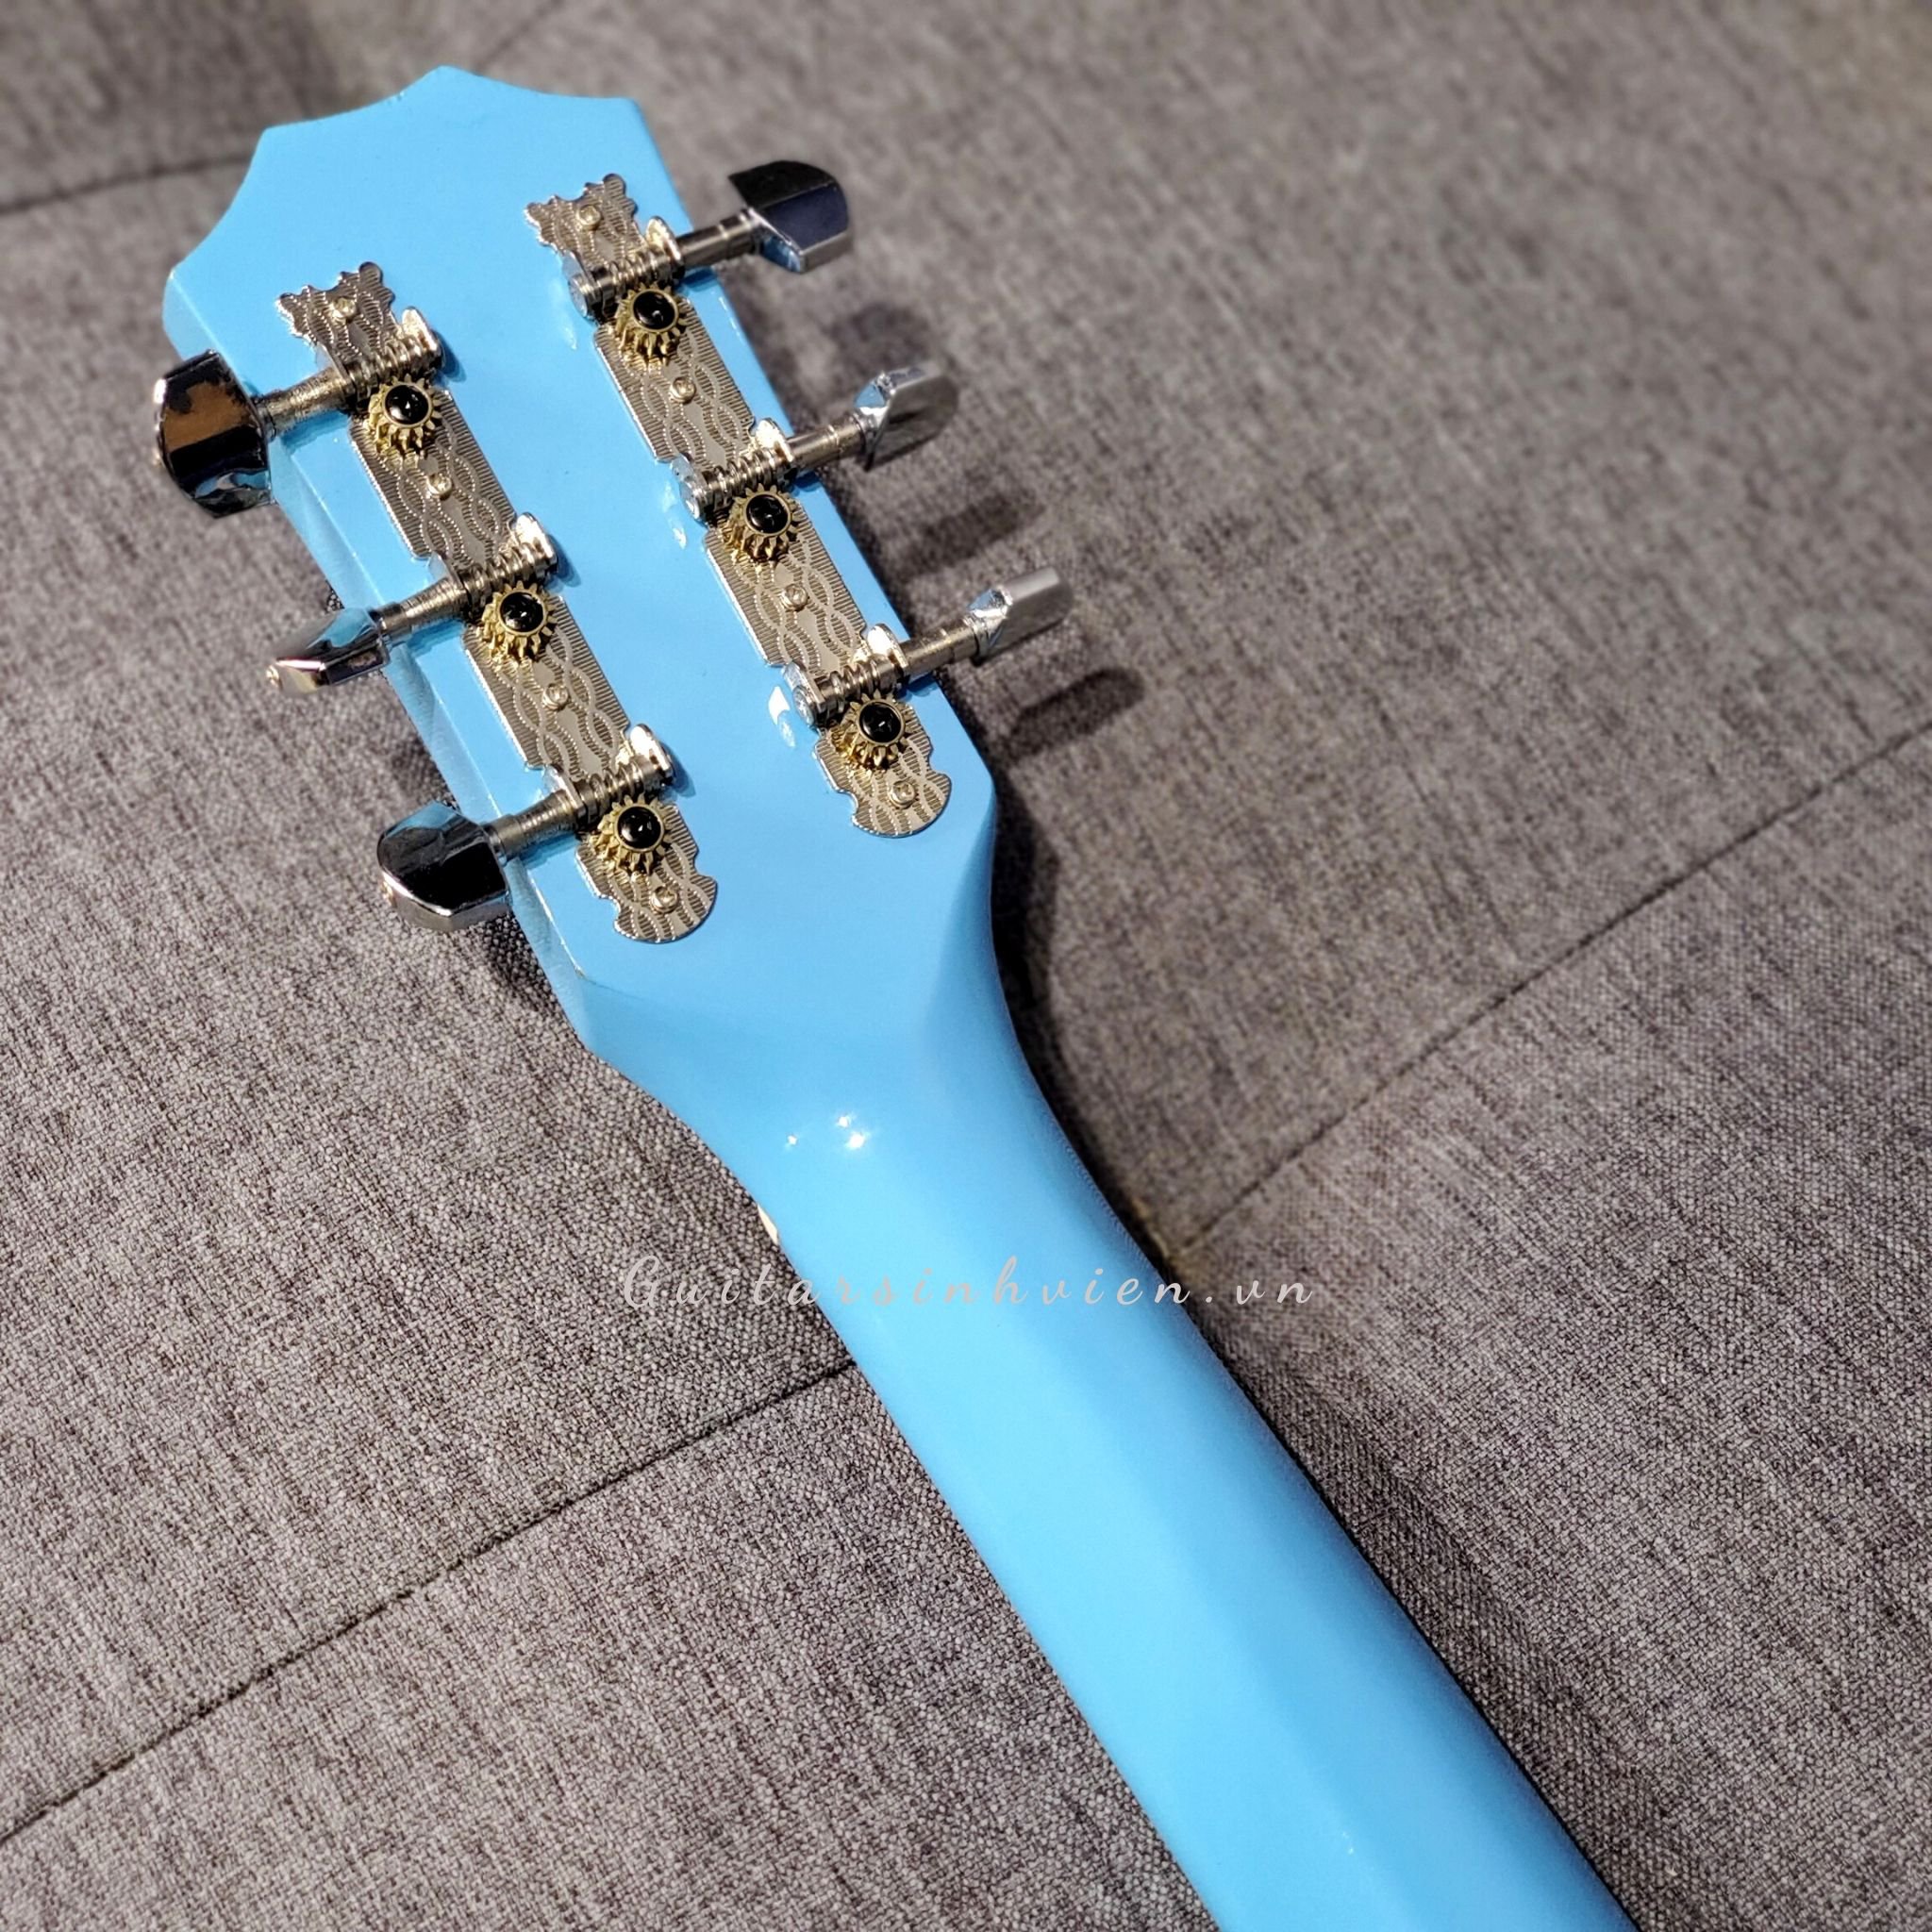 Guitar màu xanh dương